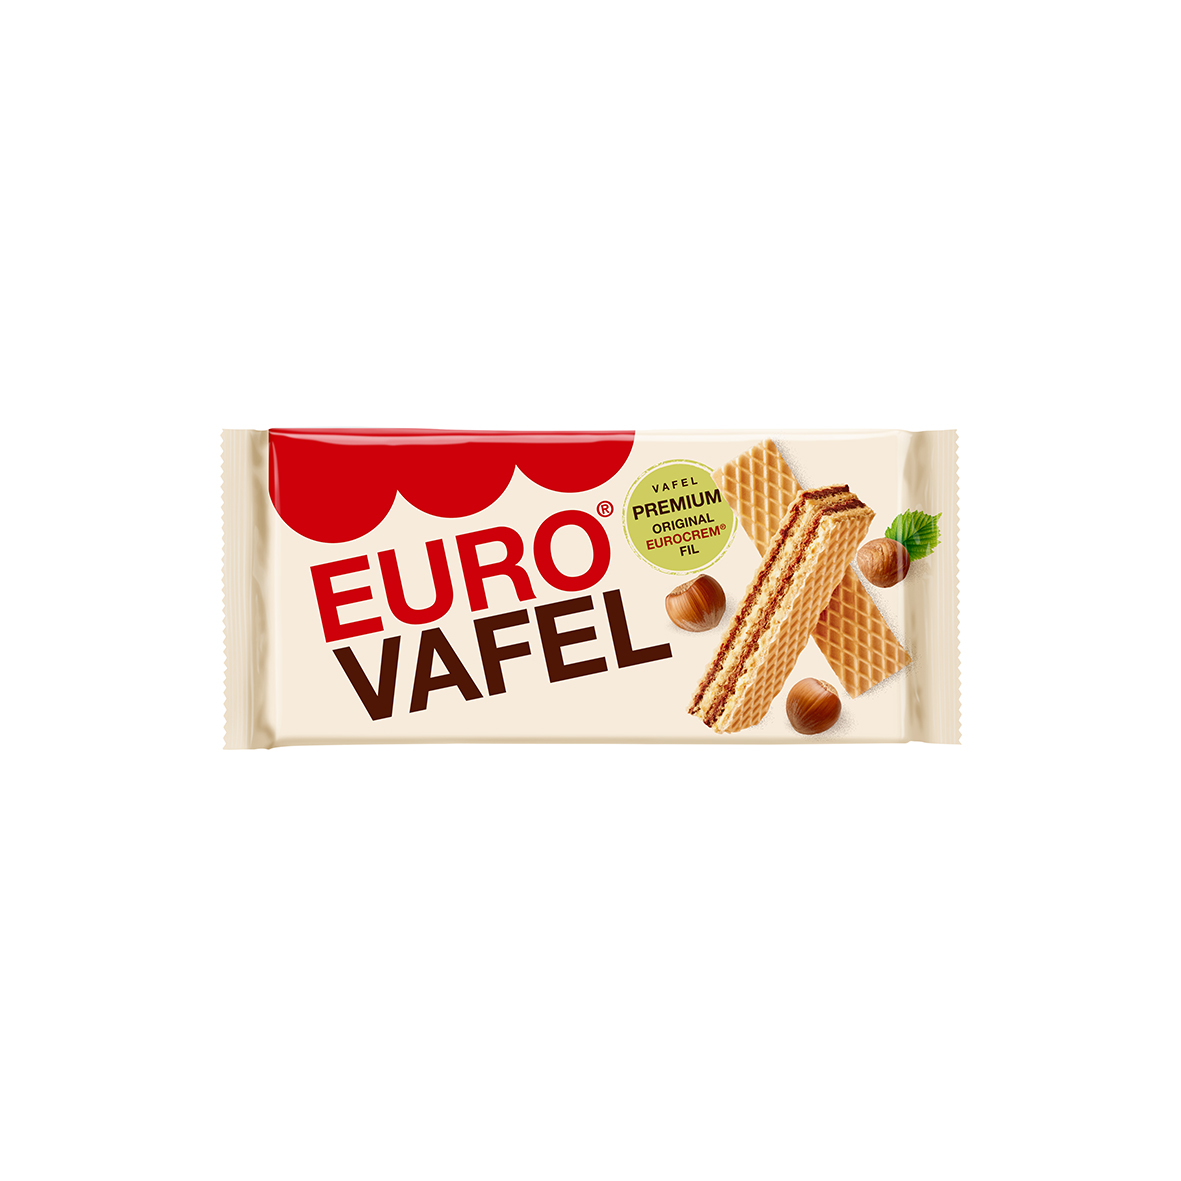 Eurovafel Premium 180g